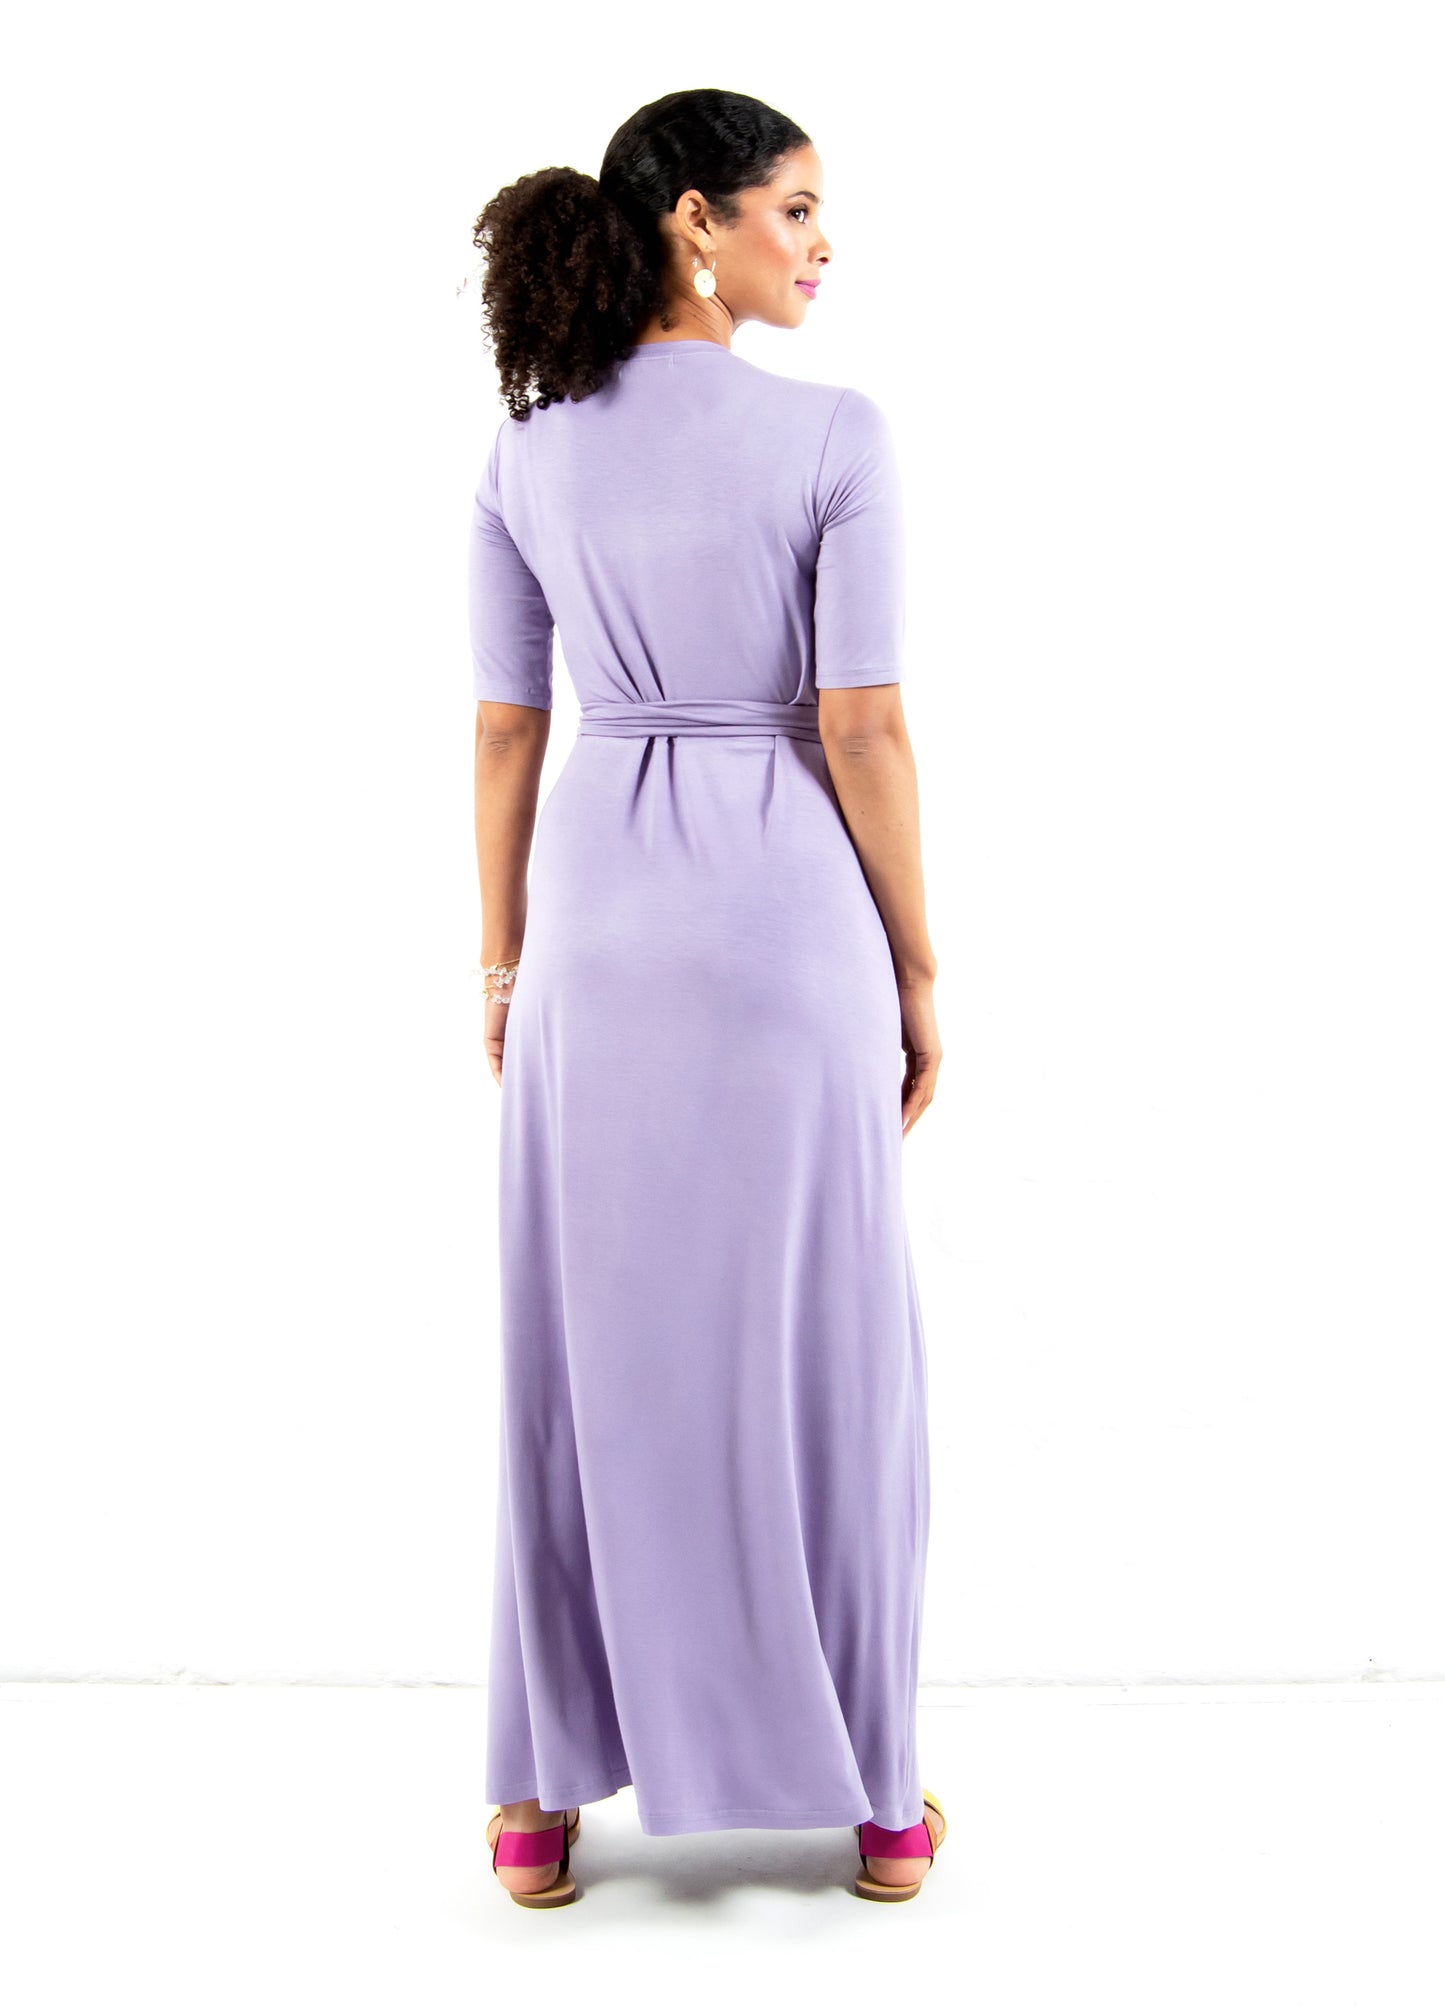 Magnolia maxi wrap dress in Lavender size 32